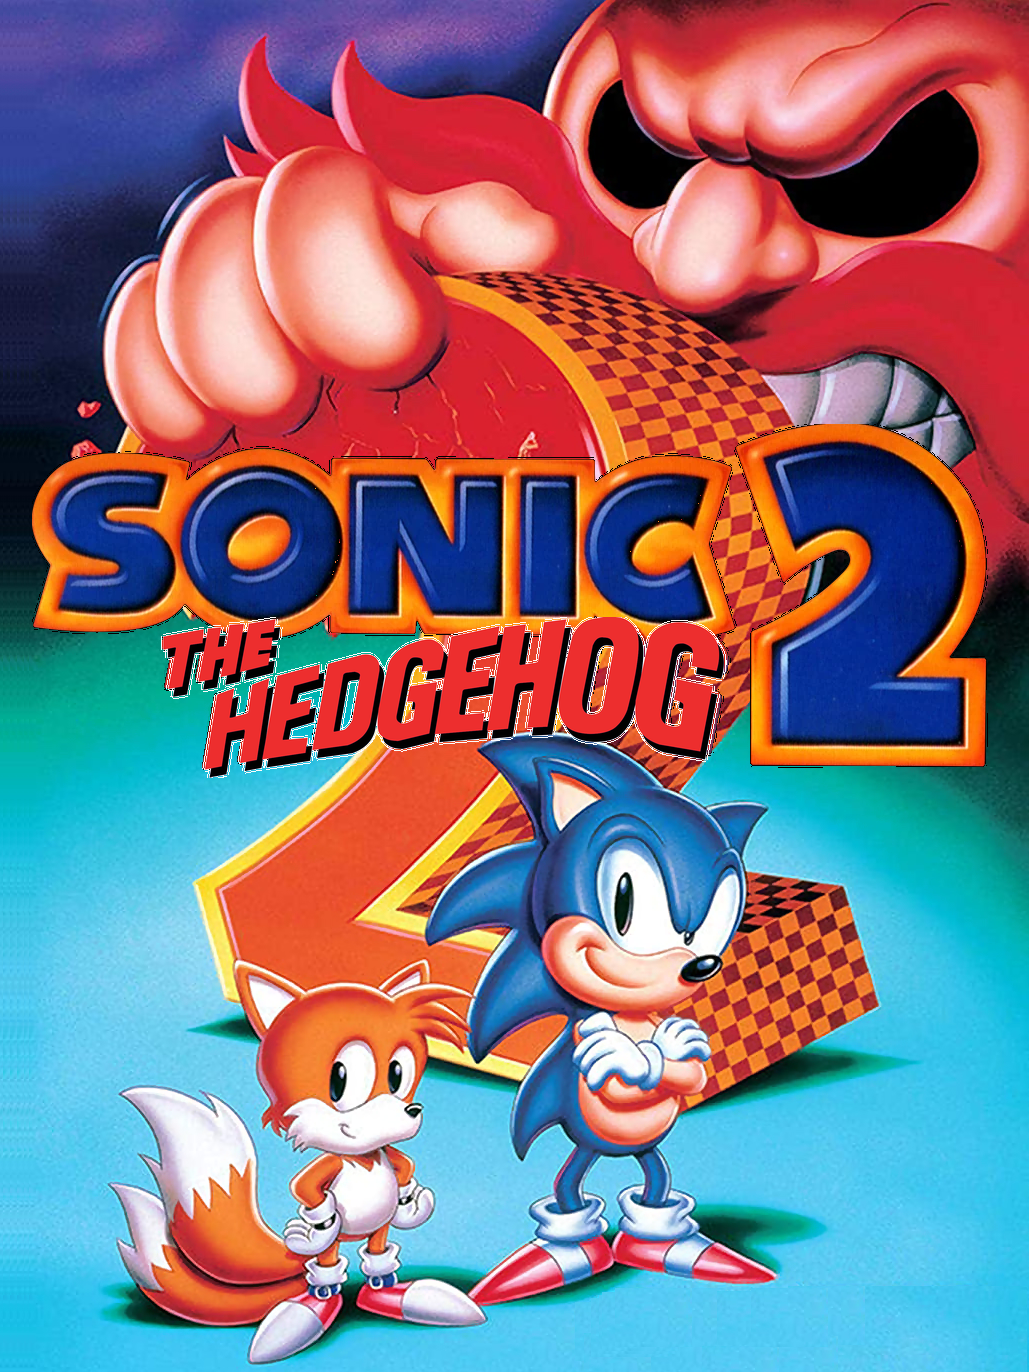 Sonic the Hedgehog 2 (1992)  Sonic the hedgehog, Sonic, Classic sonic